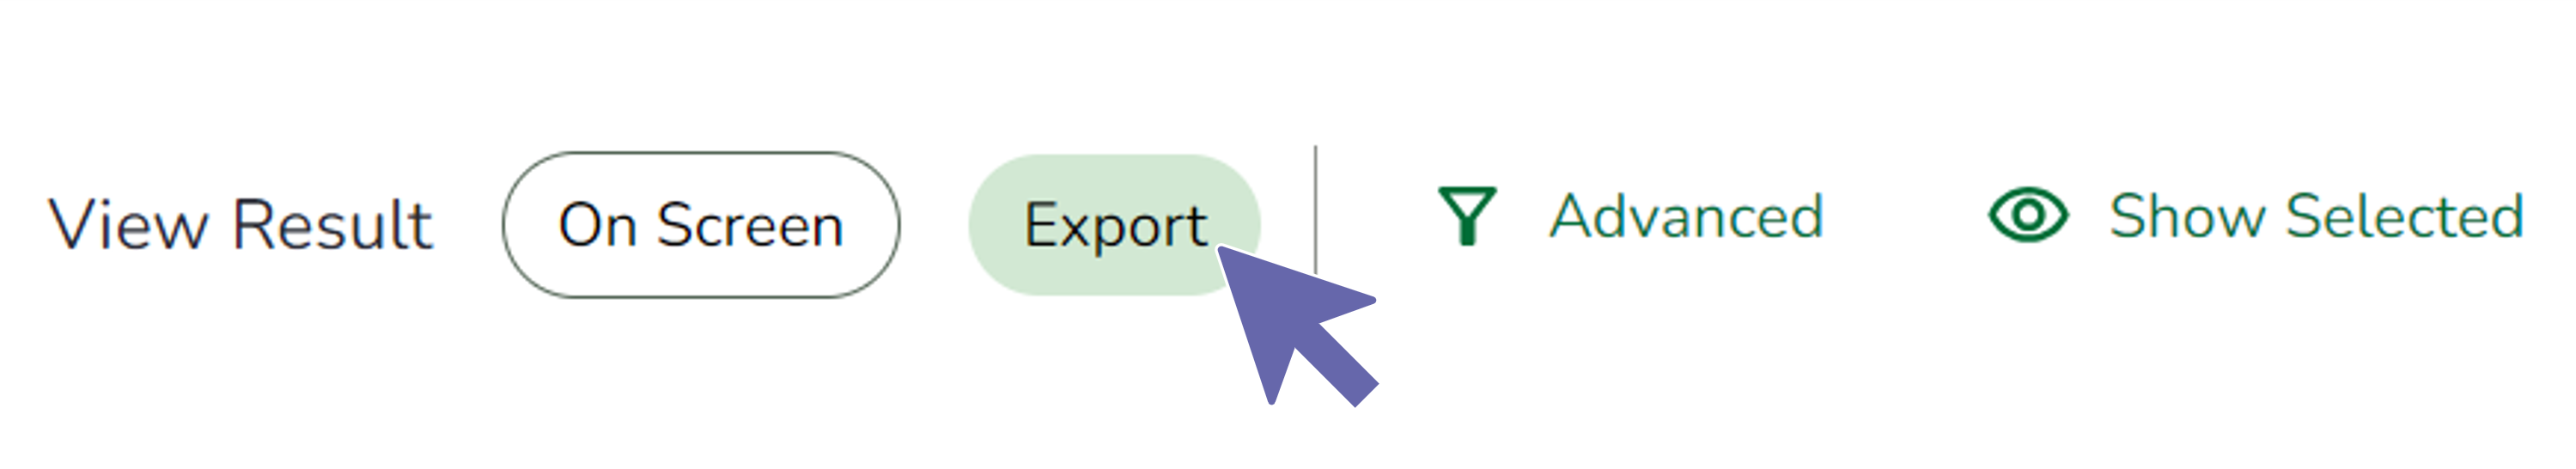 portal-export-2.png